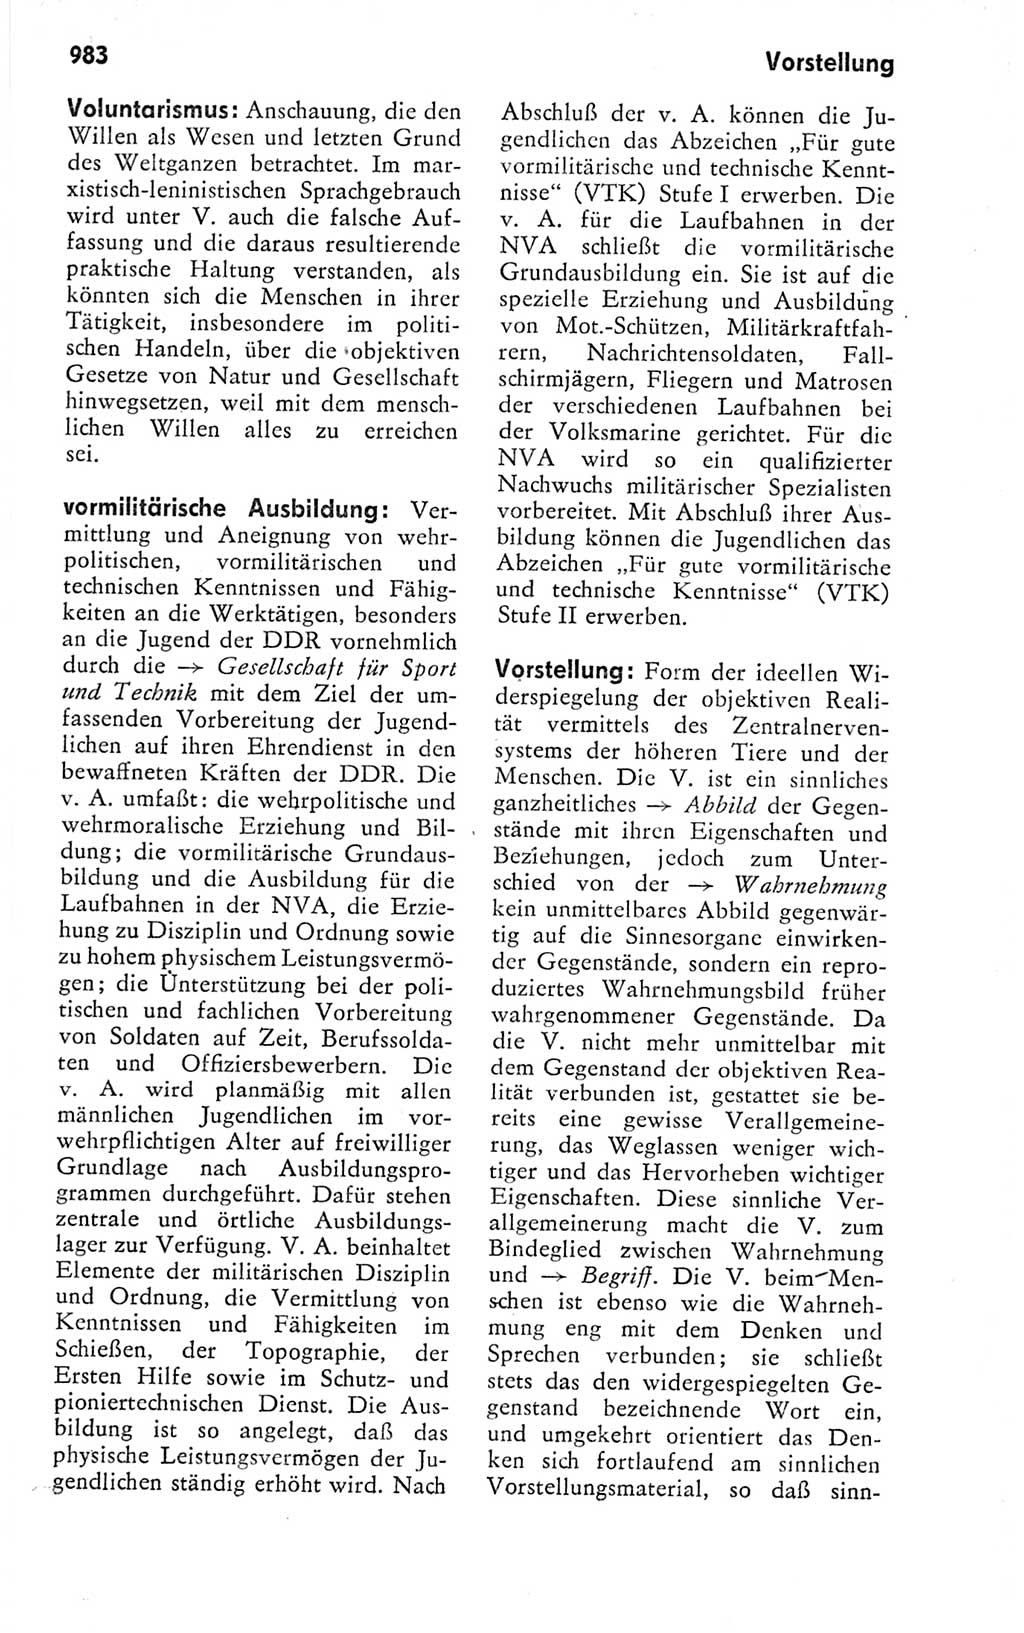 Kleines politisches Wörterbuch [Deutsche Demokratische Republik (DDR)] 1978, Seite 983 (Kl. pol. Wb. DDR 1978, S. 983)